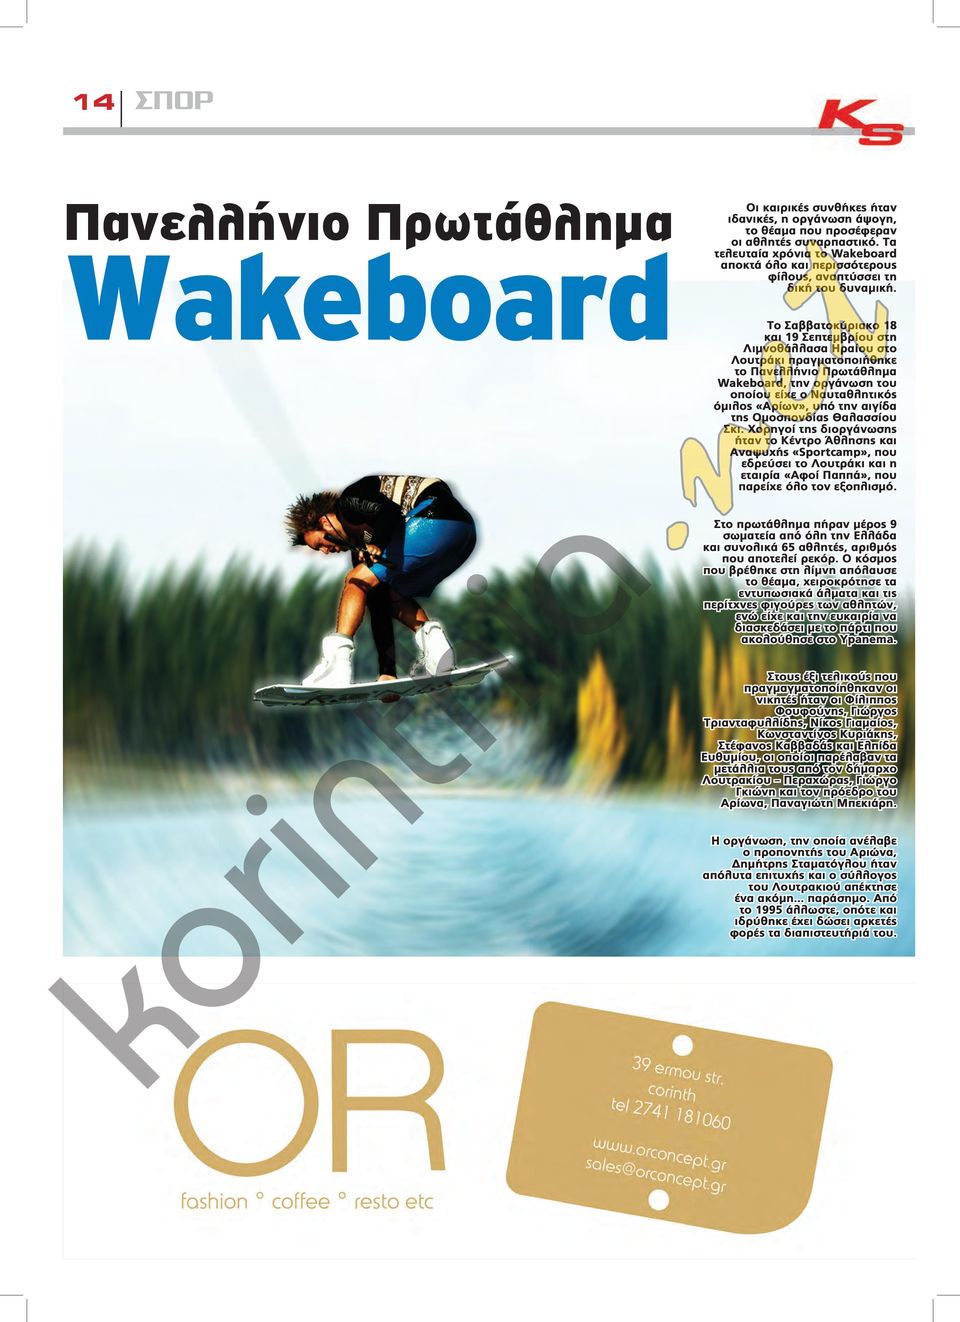 Το Σαββατοκύριακο 18 και 19 Σεπτεμβρίου στη Λιμνοθάλλασα Ηραίου στο Λουτράκι πραγματοποιήθηκε το Πανελλήνιο Πρωτάθλημα Wakeboard, την οργάνωση του οποίου είχε ο Ναυταθλητικός όμιλος «Αρίων», υπό την